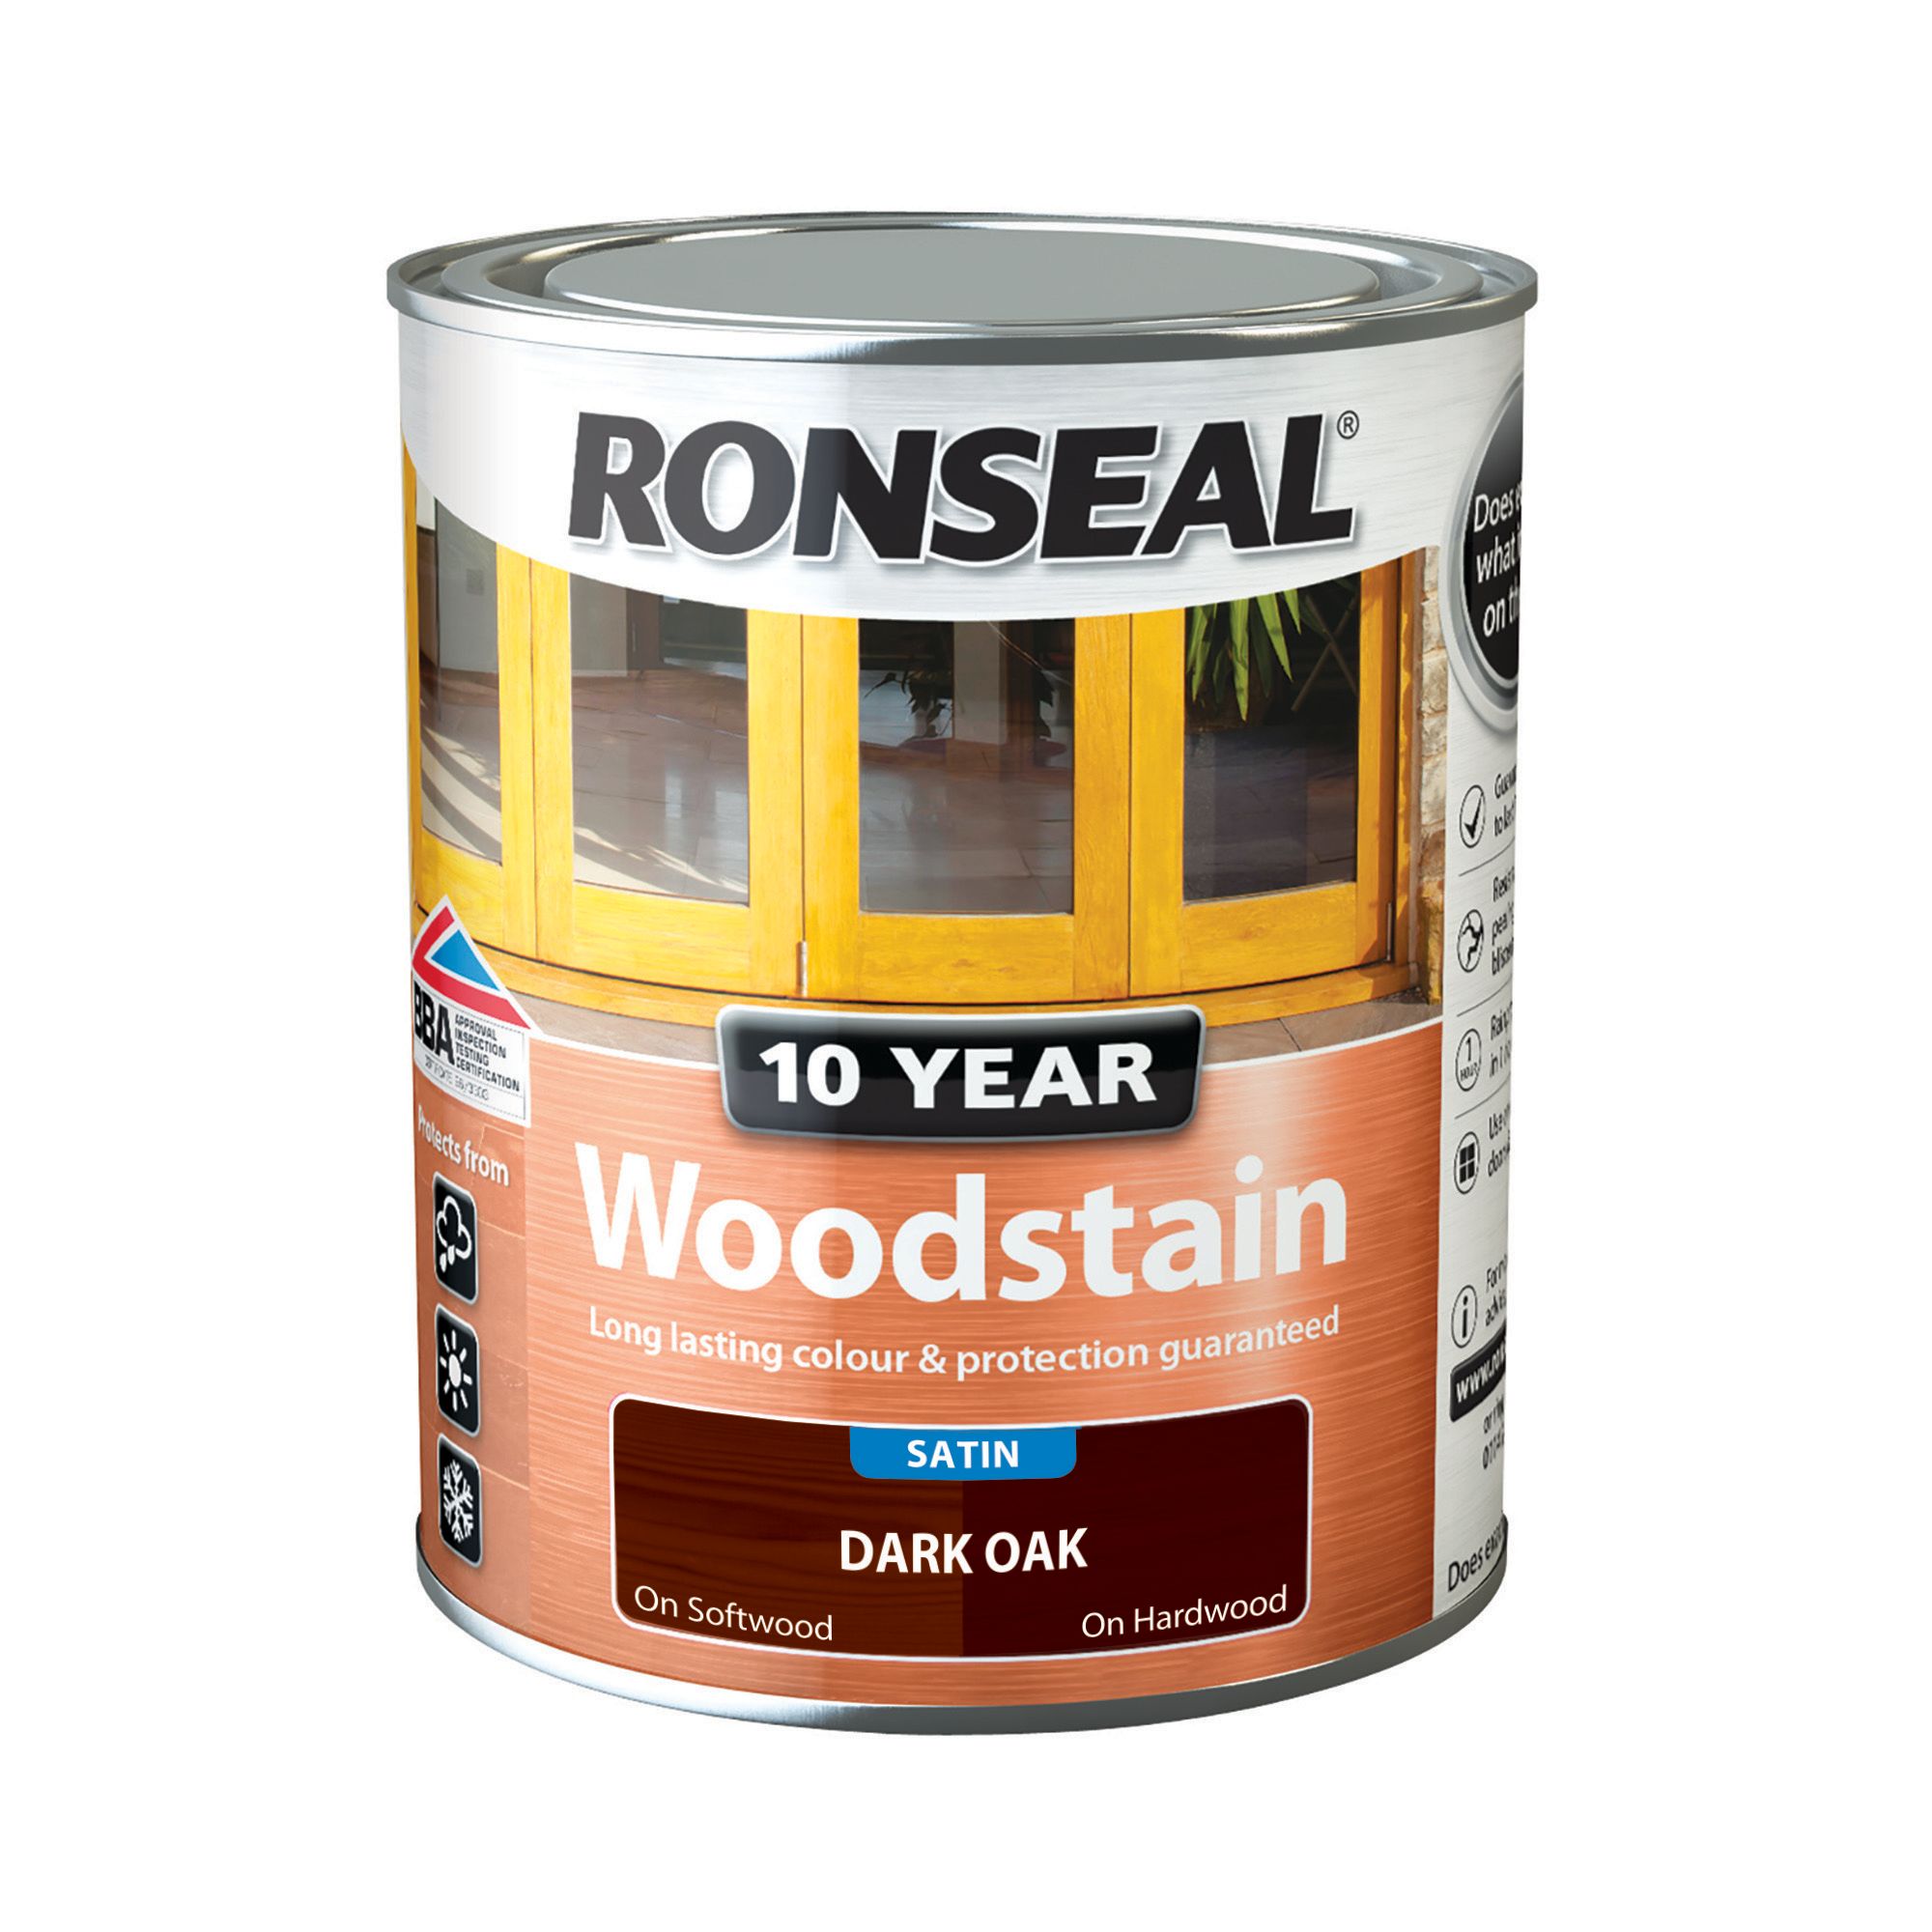 Ronseal 10 Year Woodstain - Dark Oak - 750ml